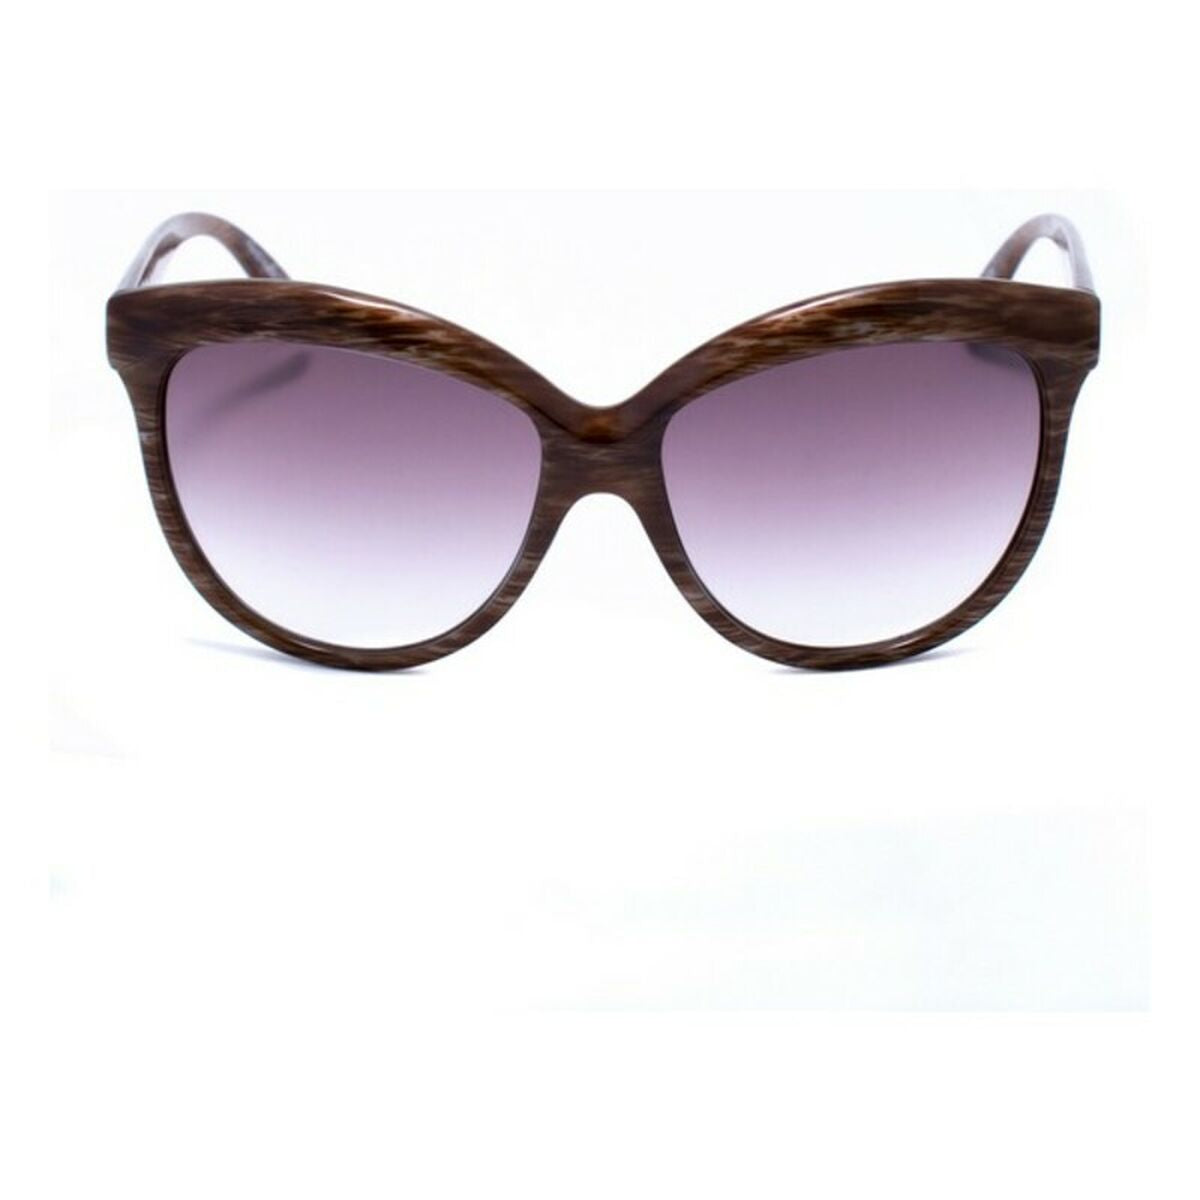 Ladies' Sunglasses Italia Independent 0092-BH2-044